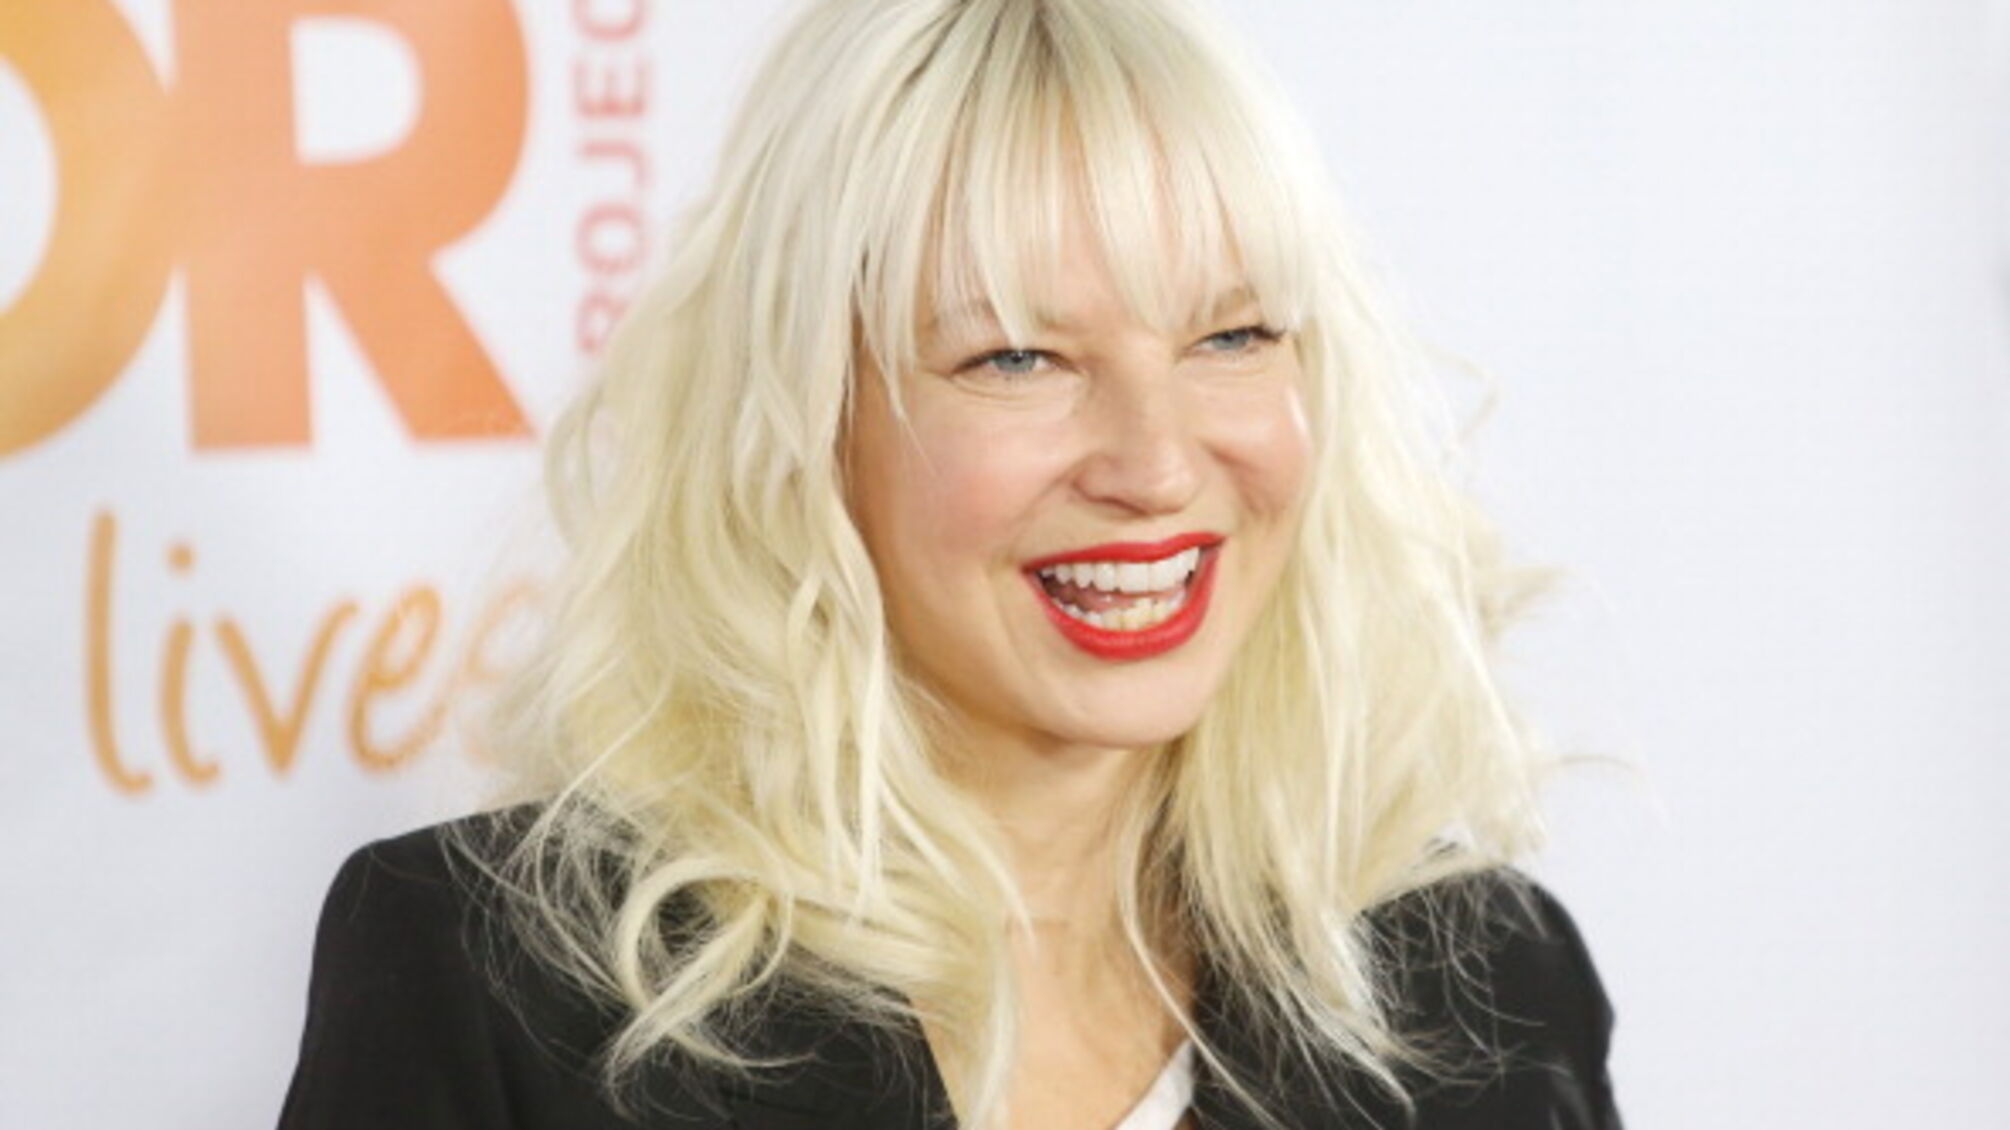 'Чувствовала себя не такой, как все': певица Sia заявила, что страдает аутизмом